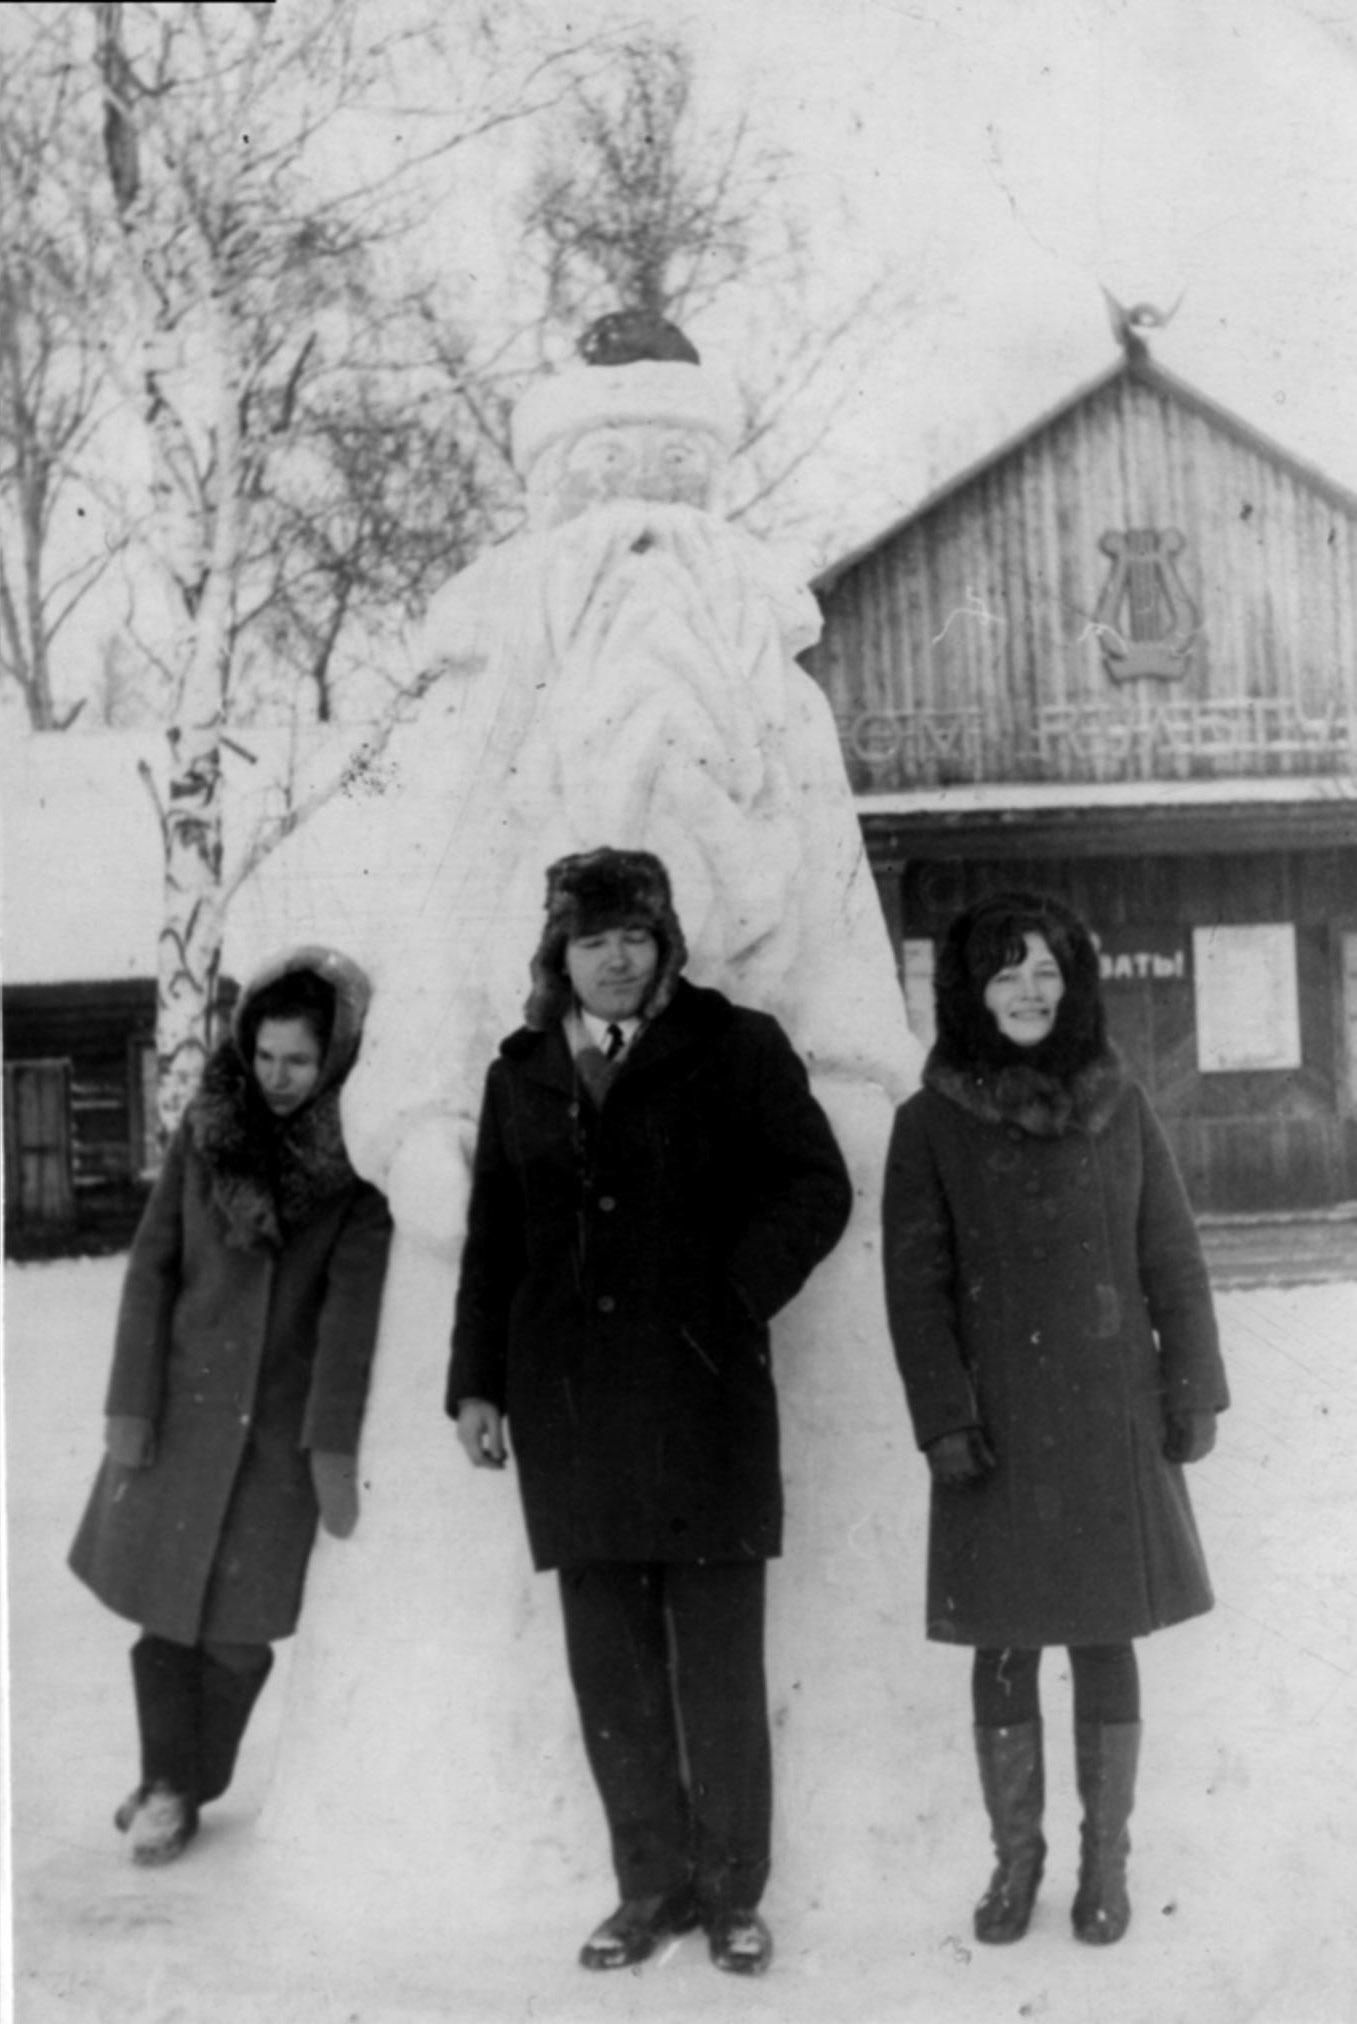 Мои снежные скульптуры около Дома культуры. 1972 г.